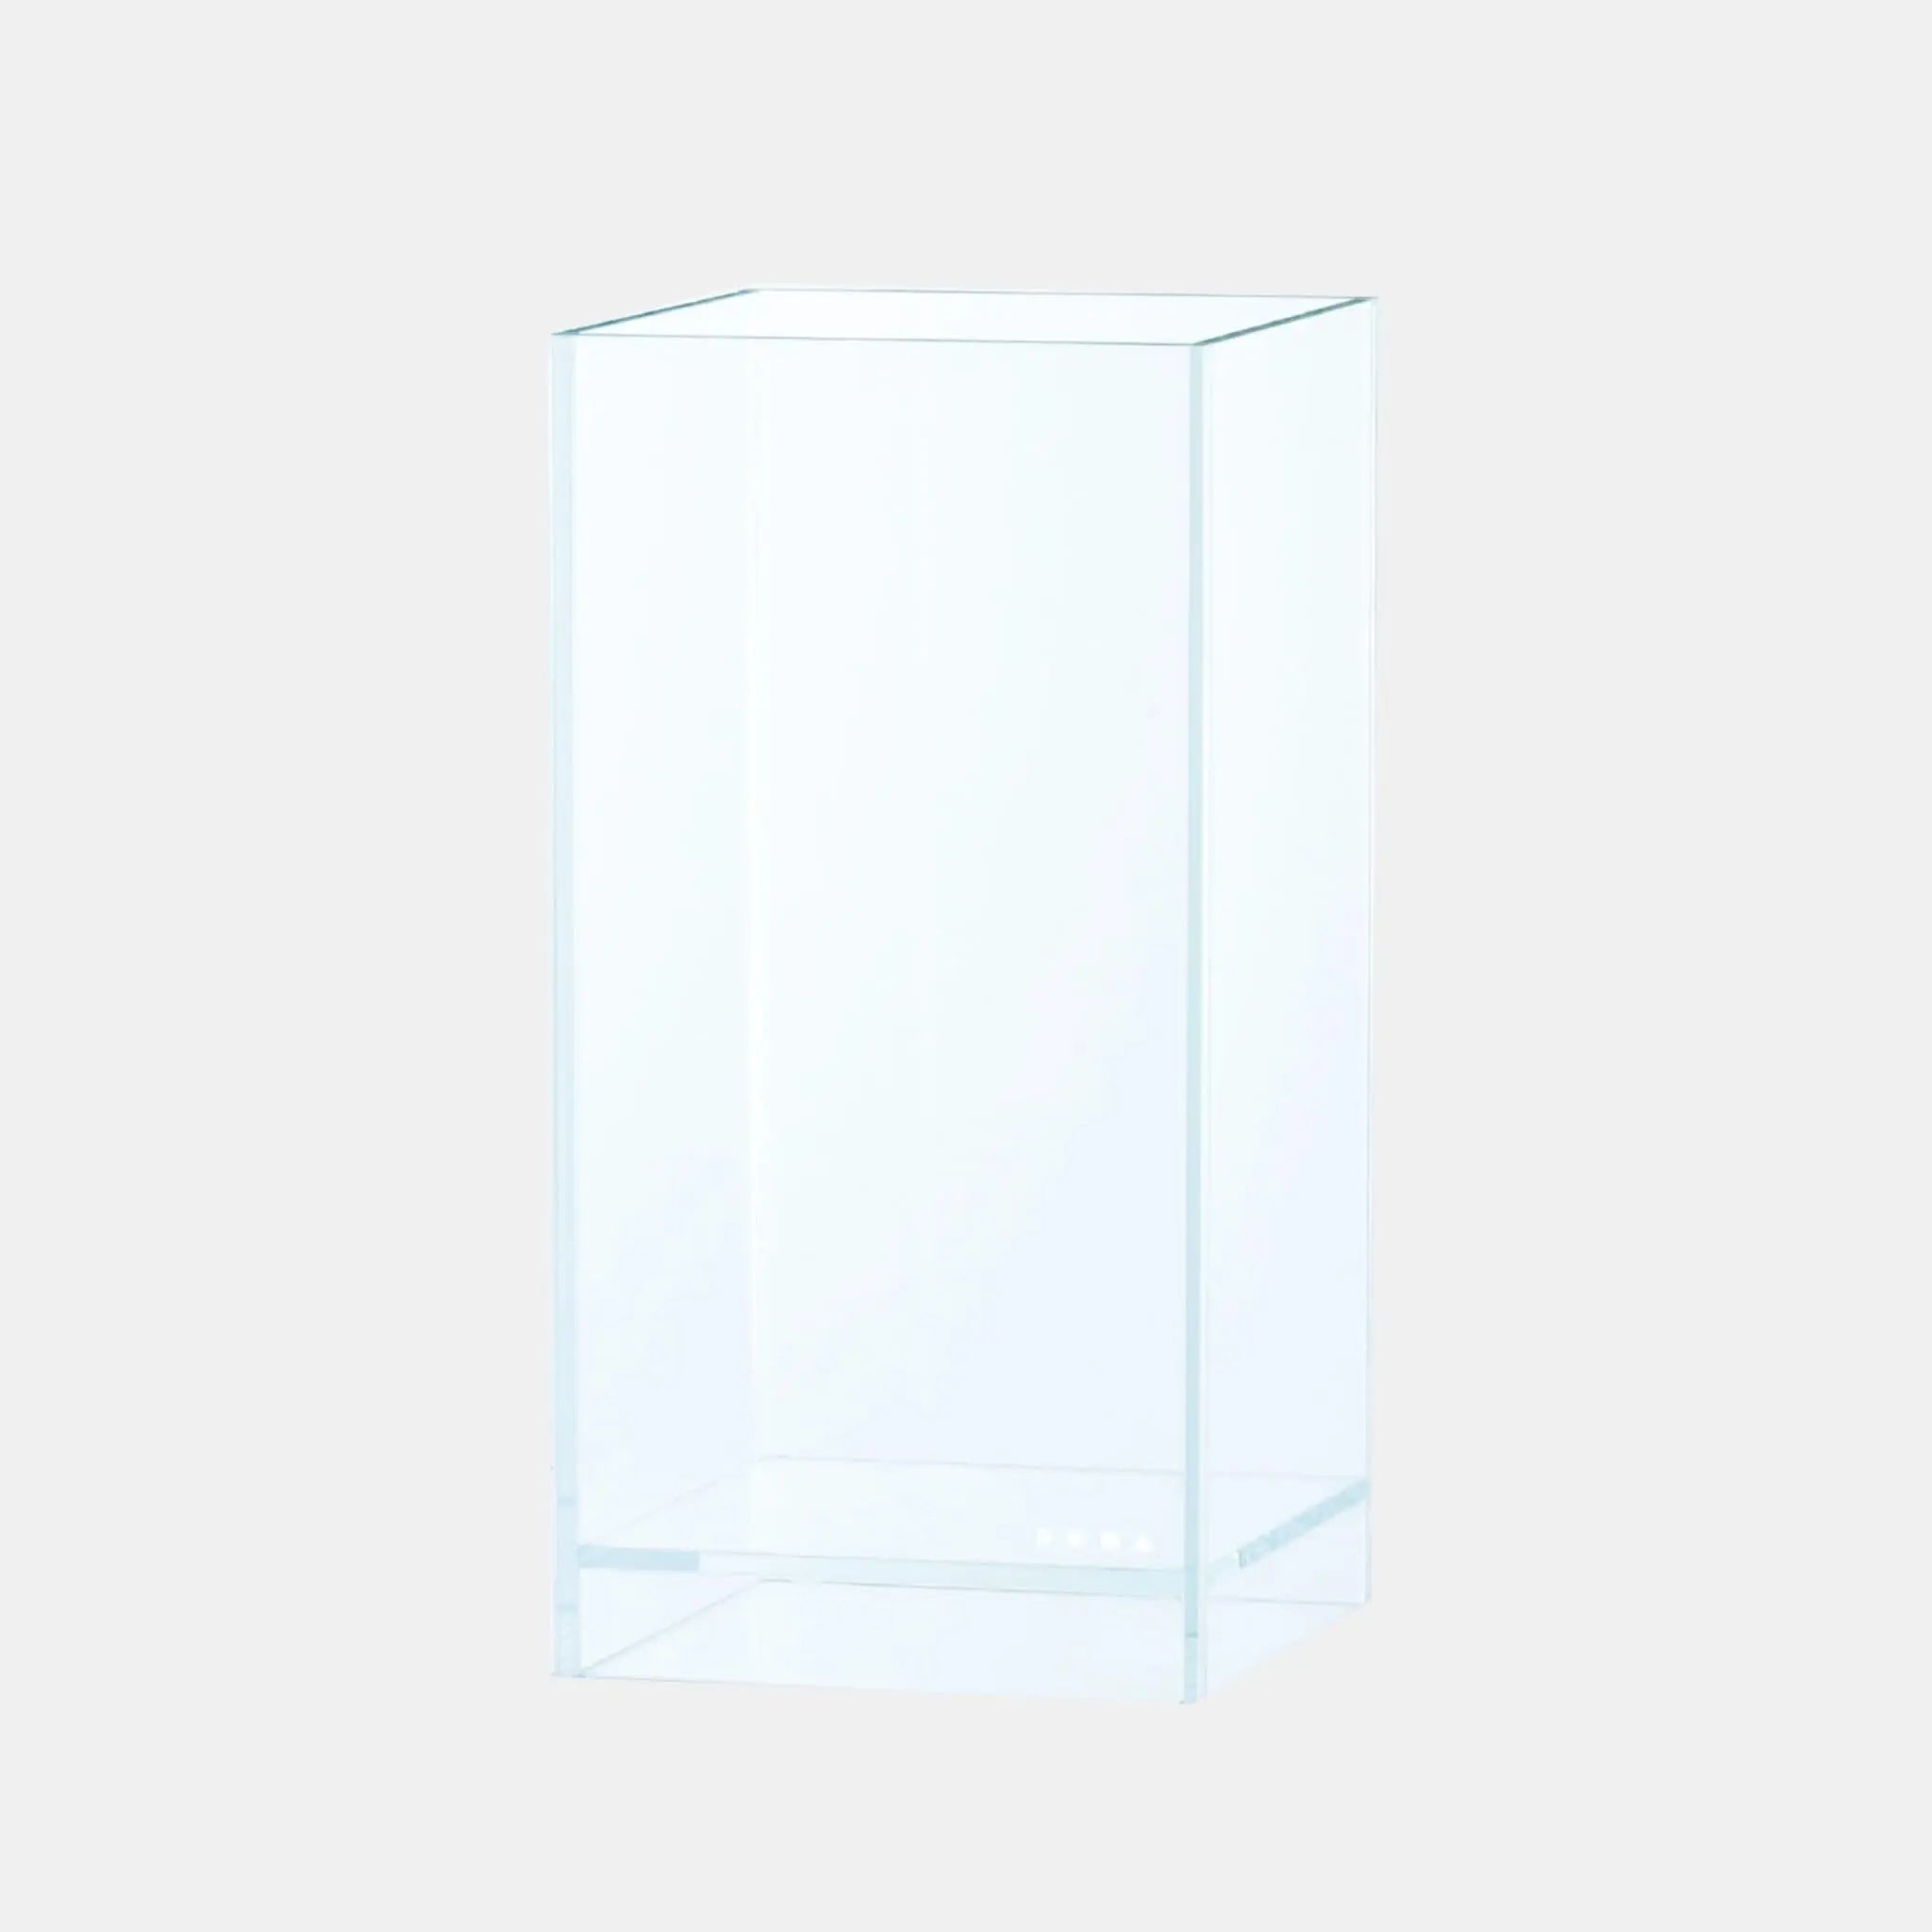 DOOA Neo Glass Air (15x15x30cm) - Aqua Essentials